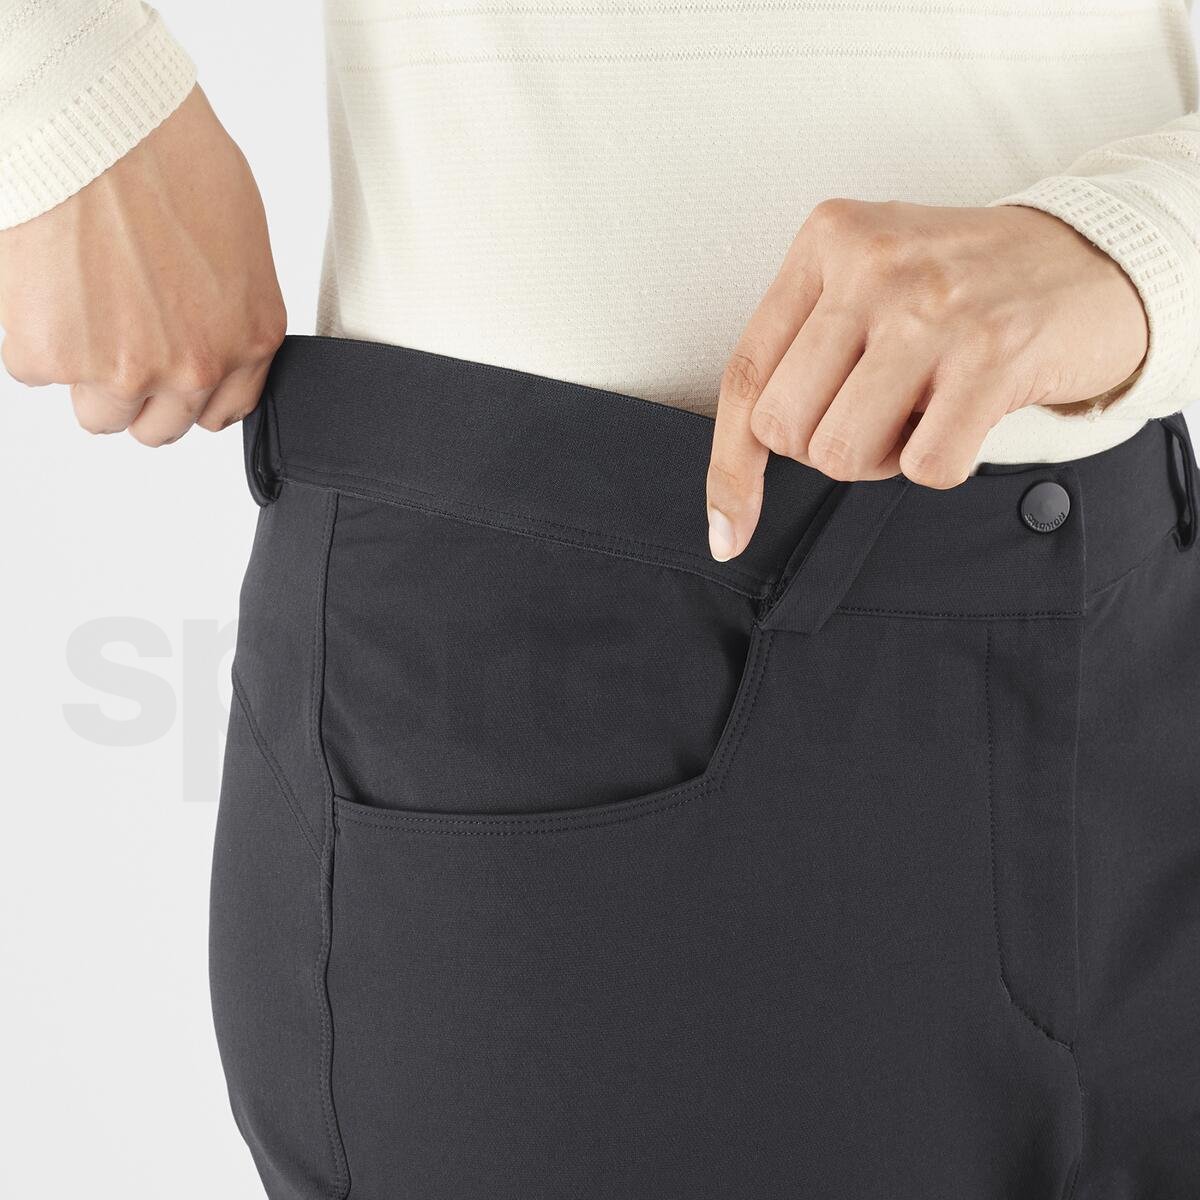 Kalhoty Salomon Wayfarer Warm Pants W - černá (standardní délka)